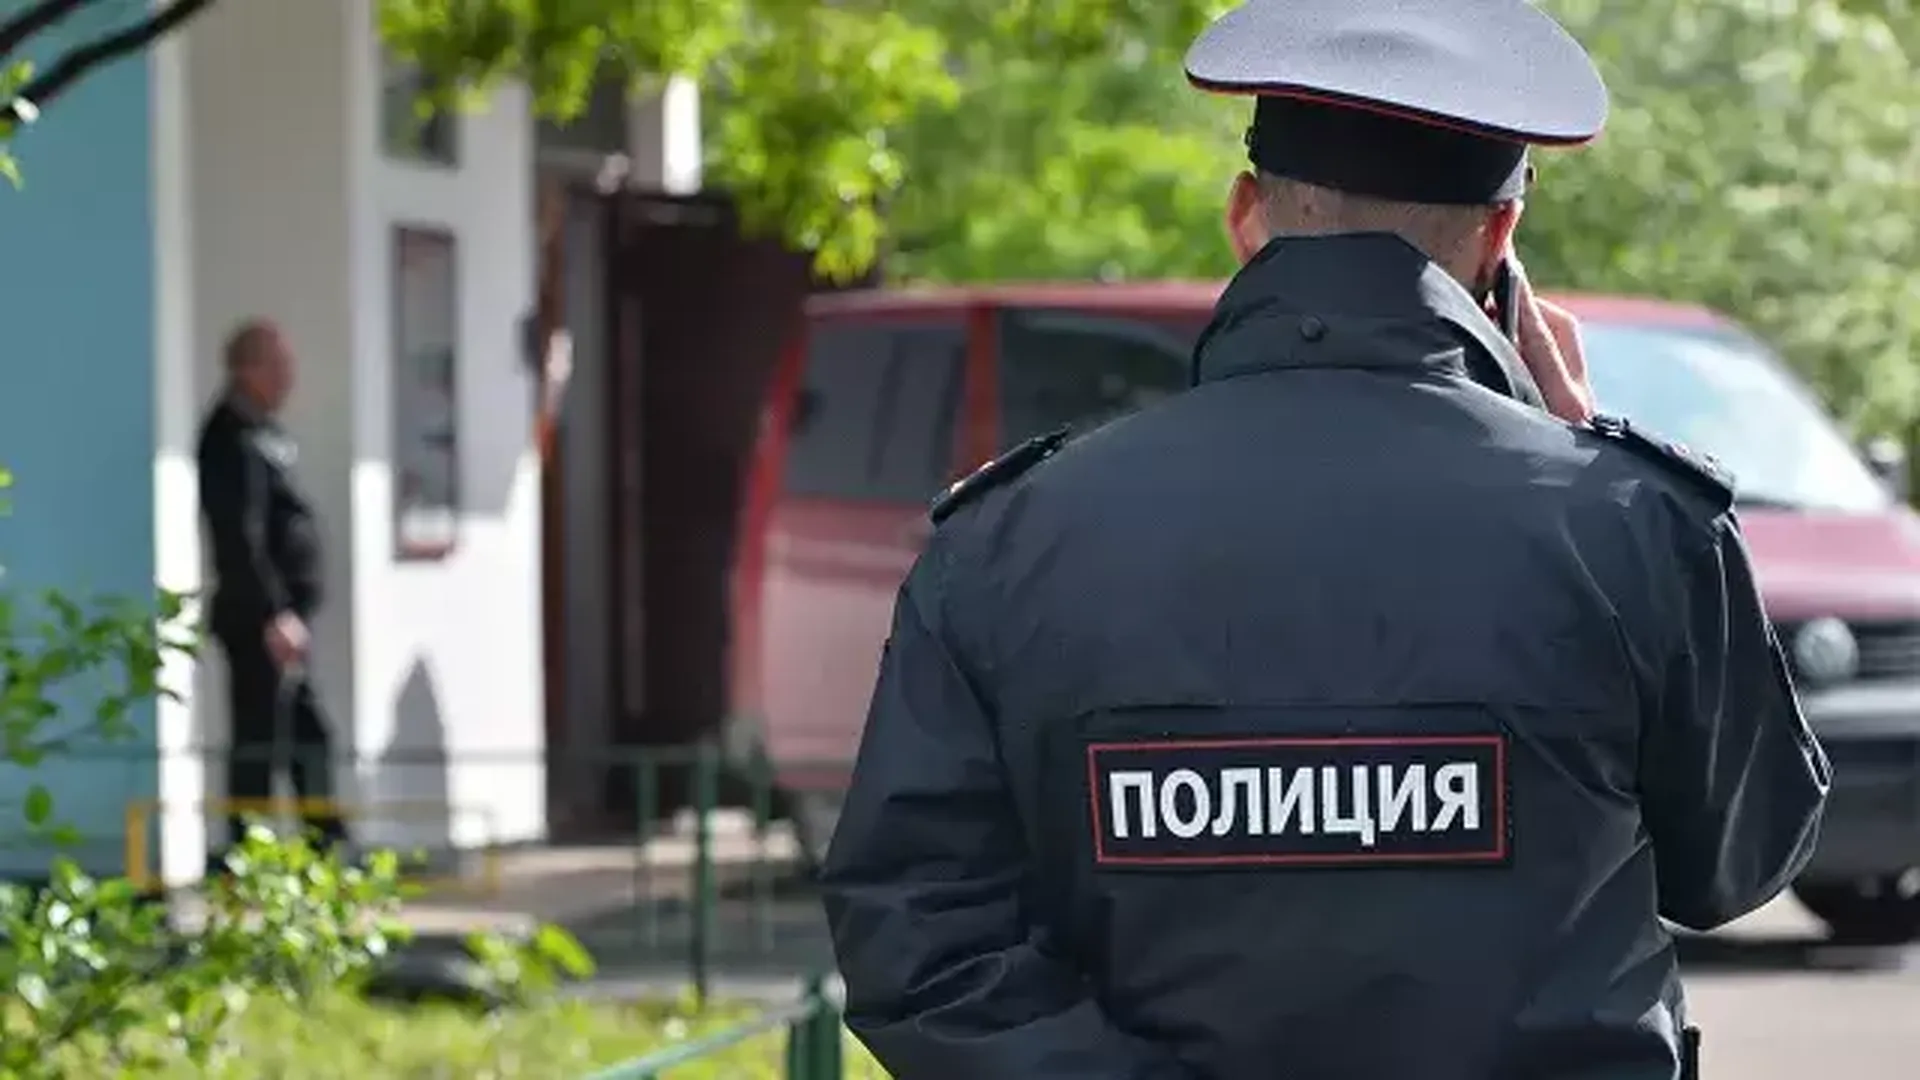 СМИ: полицейскому из Мошкова предлагали сохранить жизнь за 5 млн рублей